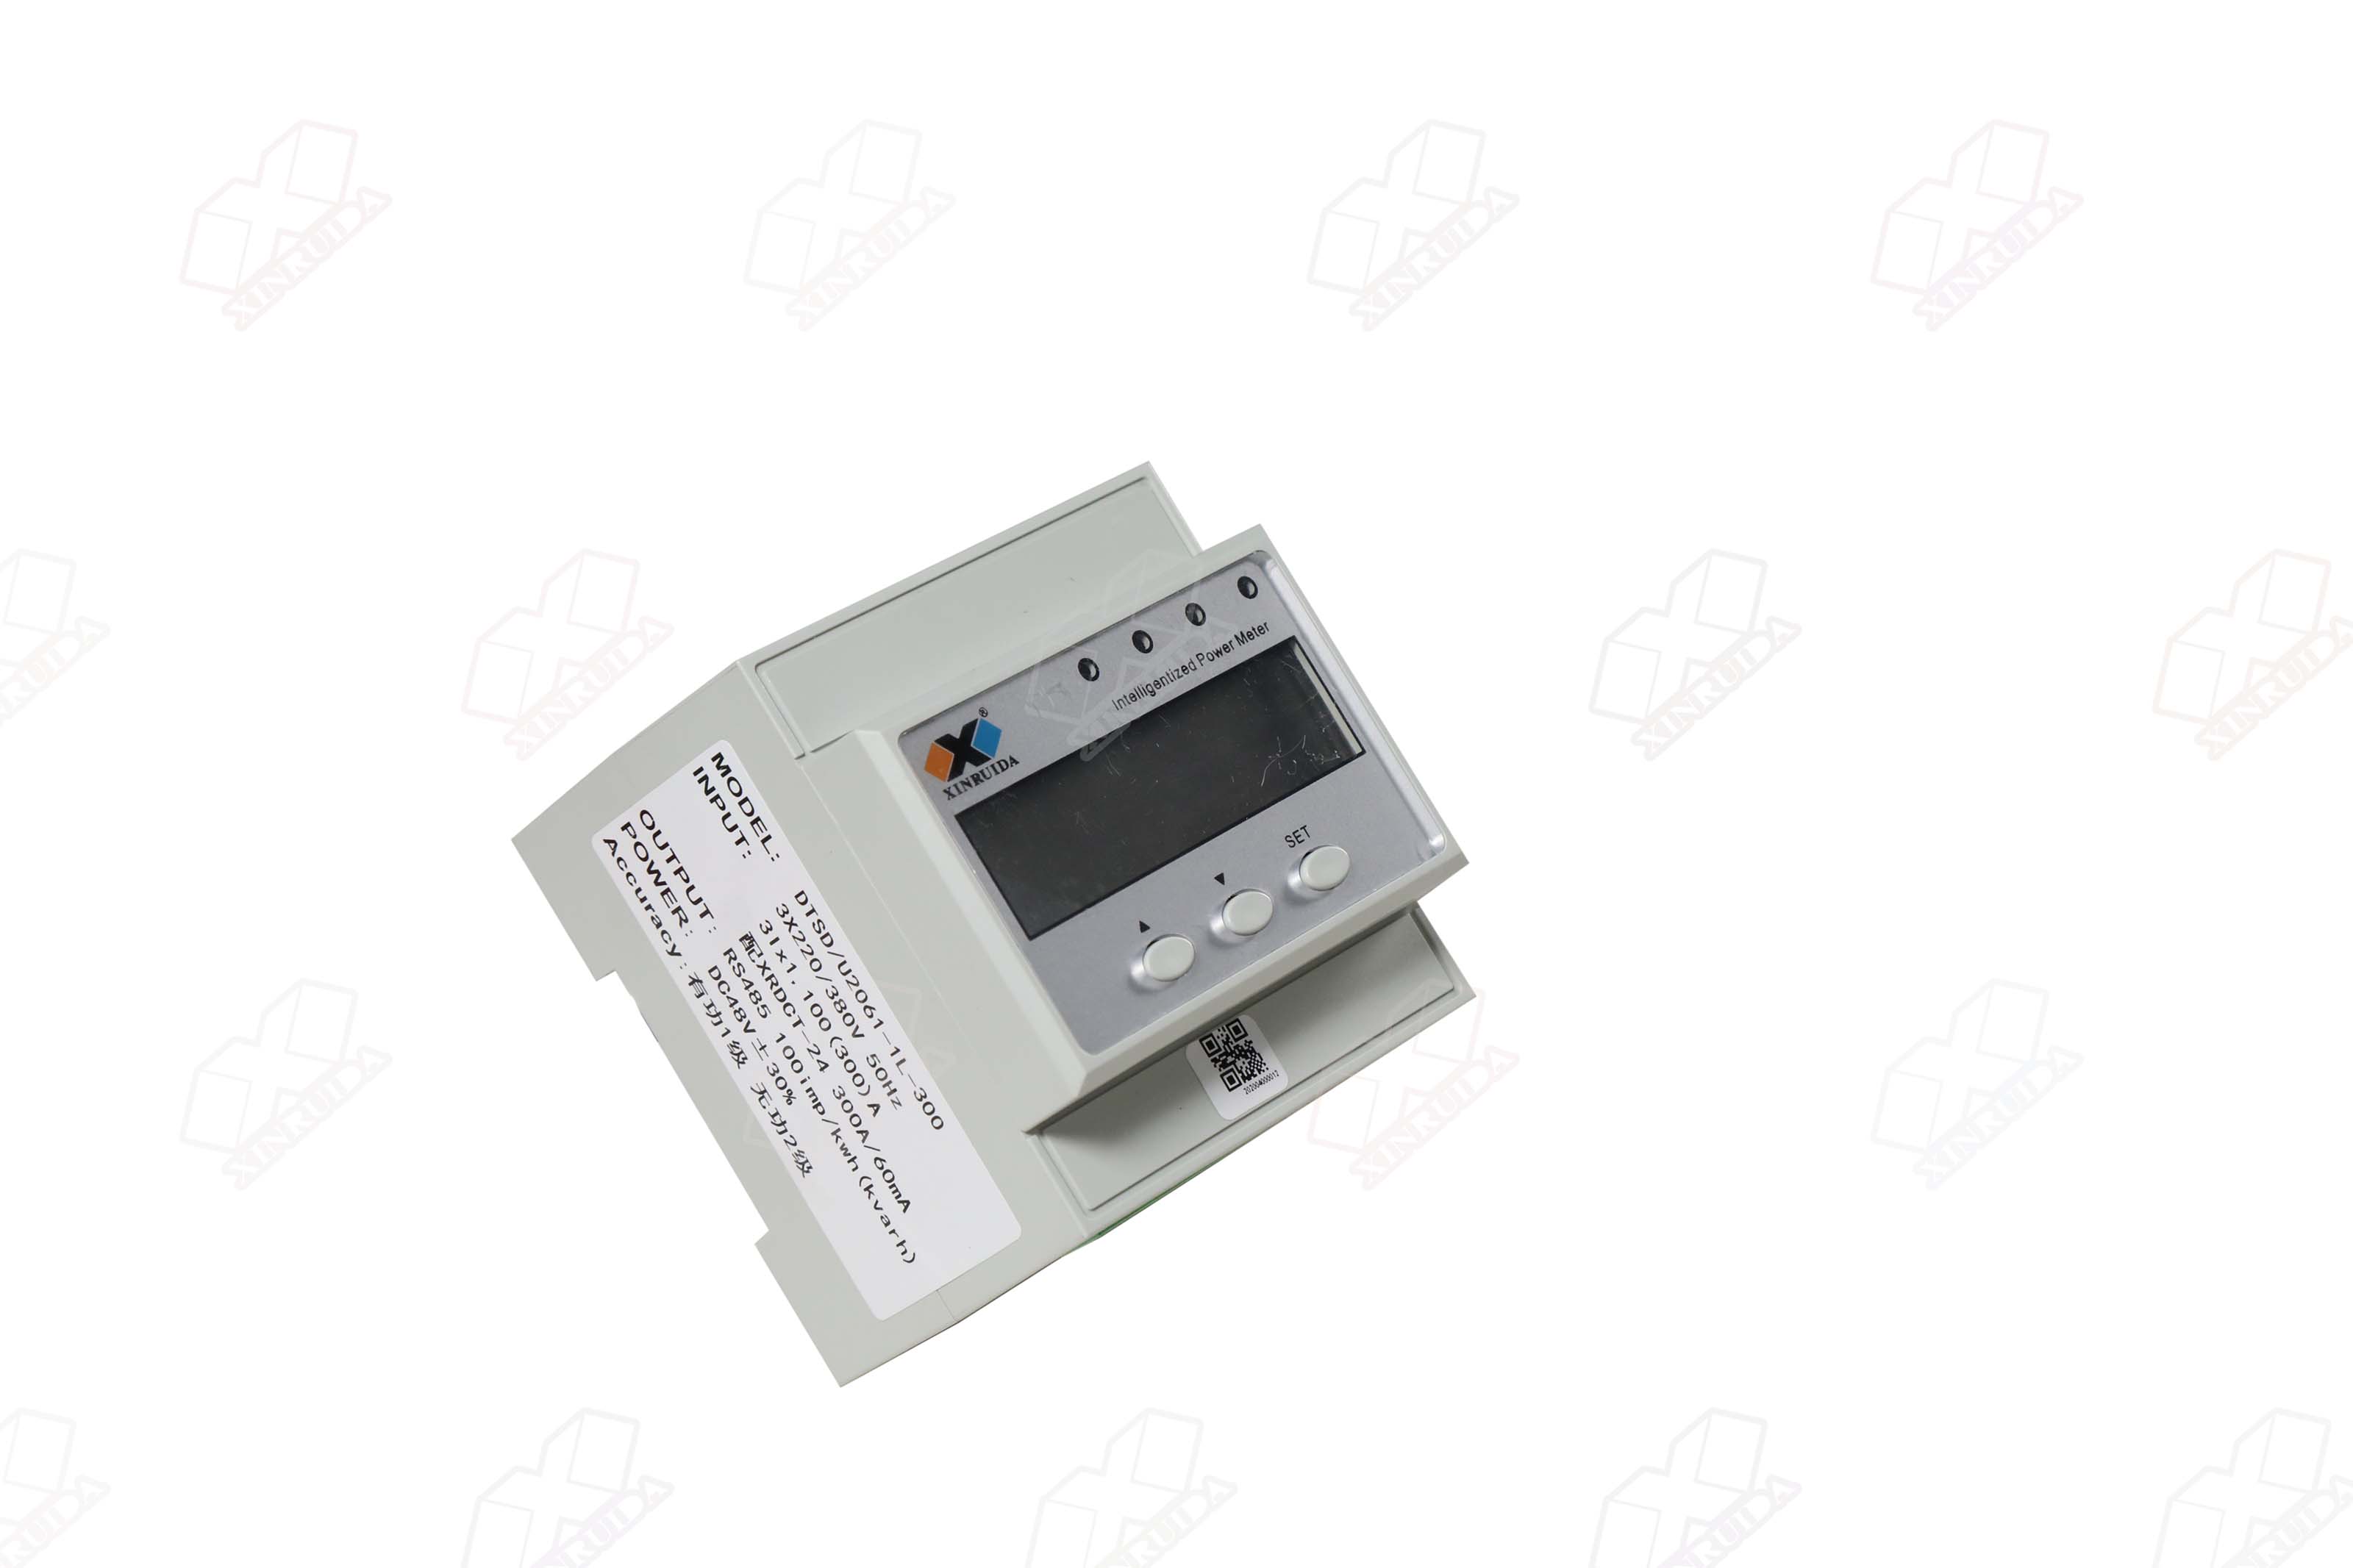 DTSD U2061 DC Electronic Watt Hour Meter